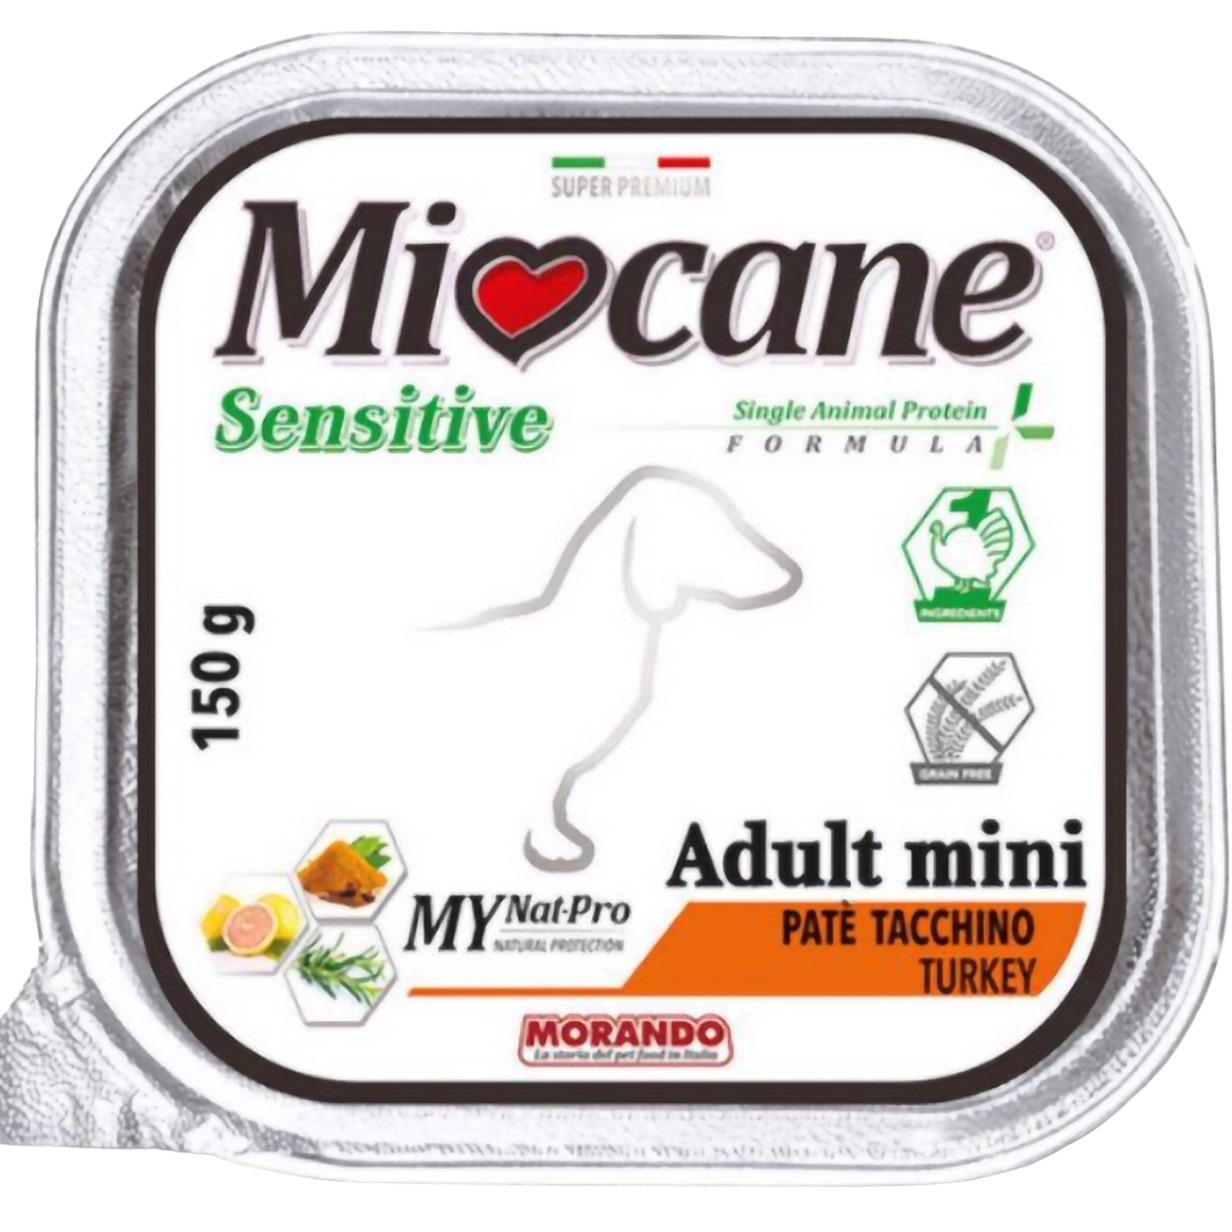 Беззерновые монопротеиновые консервы для собак мелких пород Morando MioСane Sensitive Monoprotein Adult Mini, индейка, 150 г - фото 1